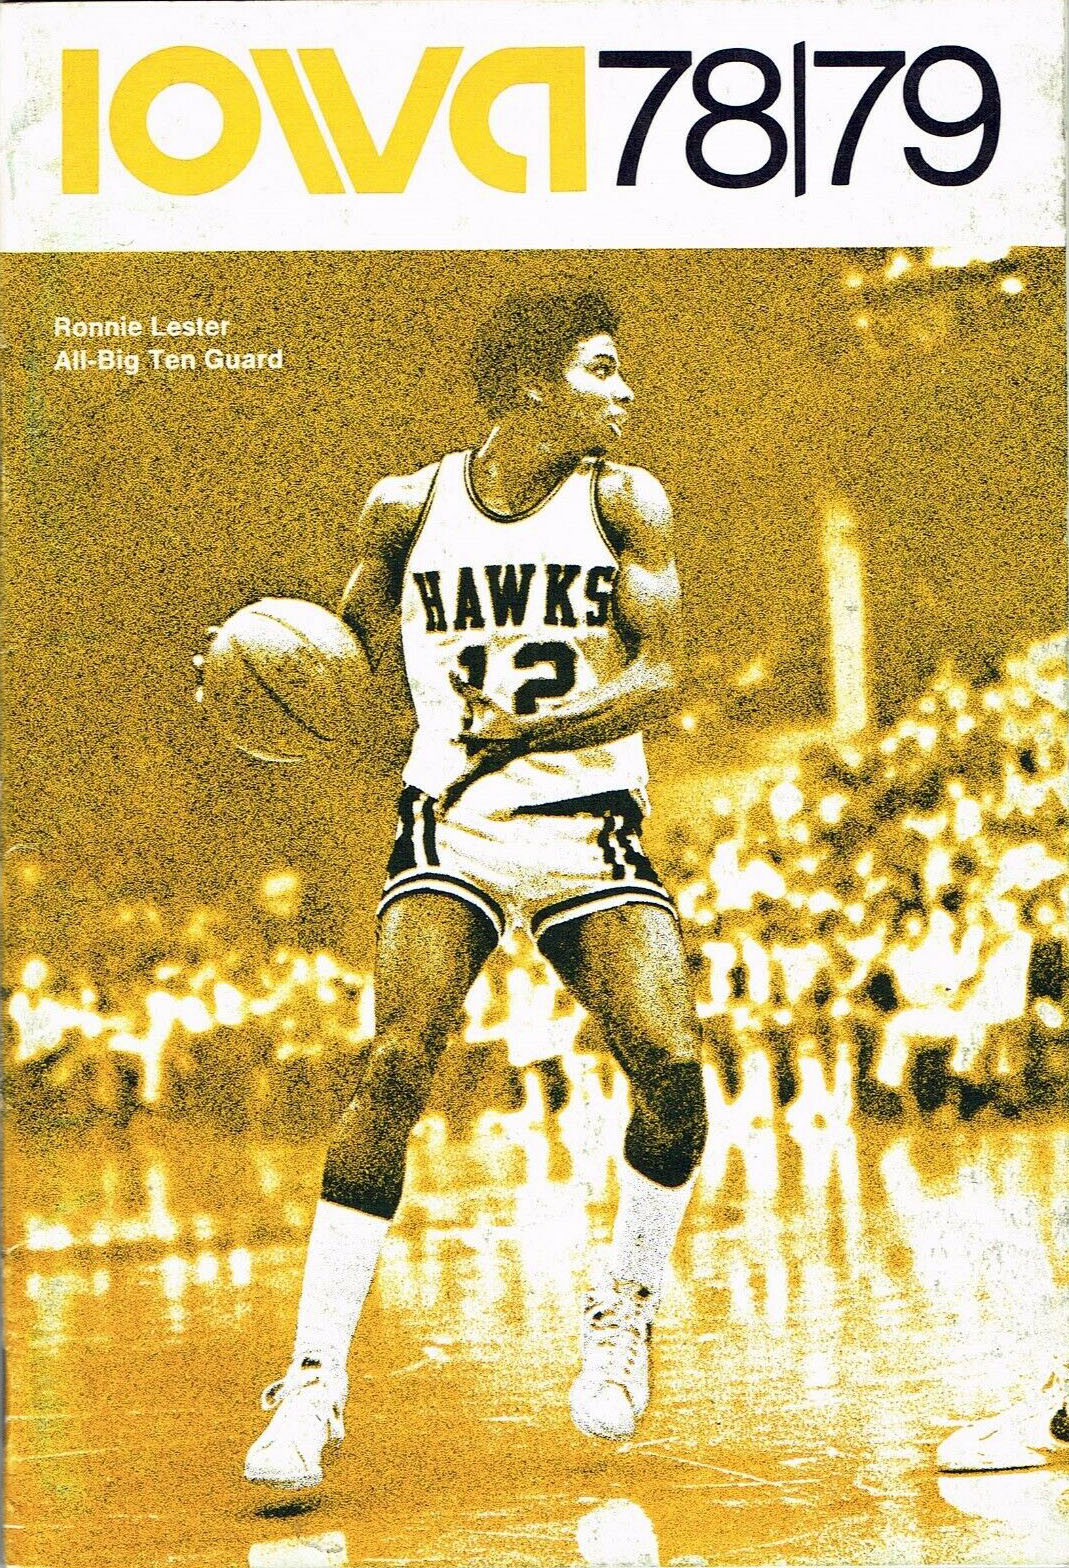 1978-79-iowa-hawkeyes-men-s-basketball-media-guide-sportspaper-wiki